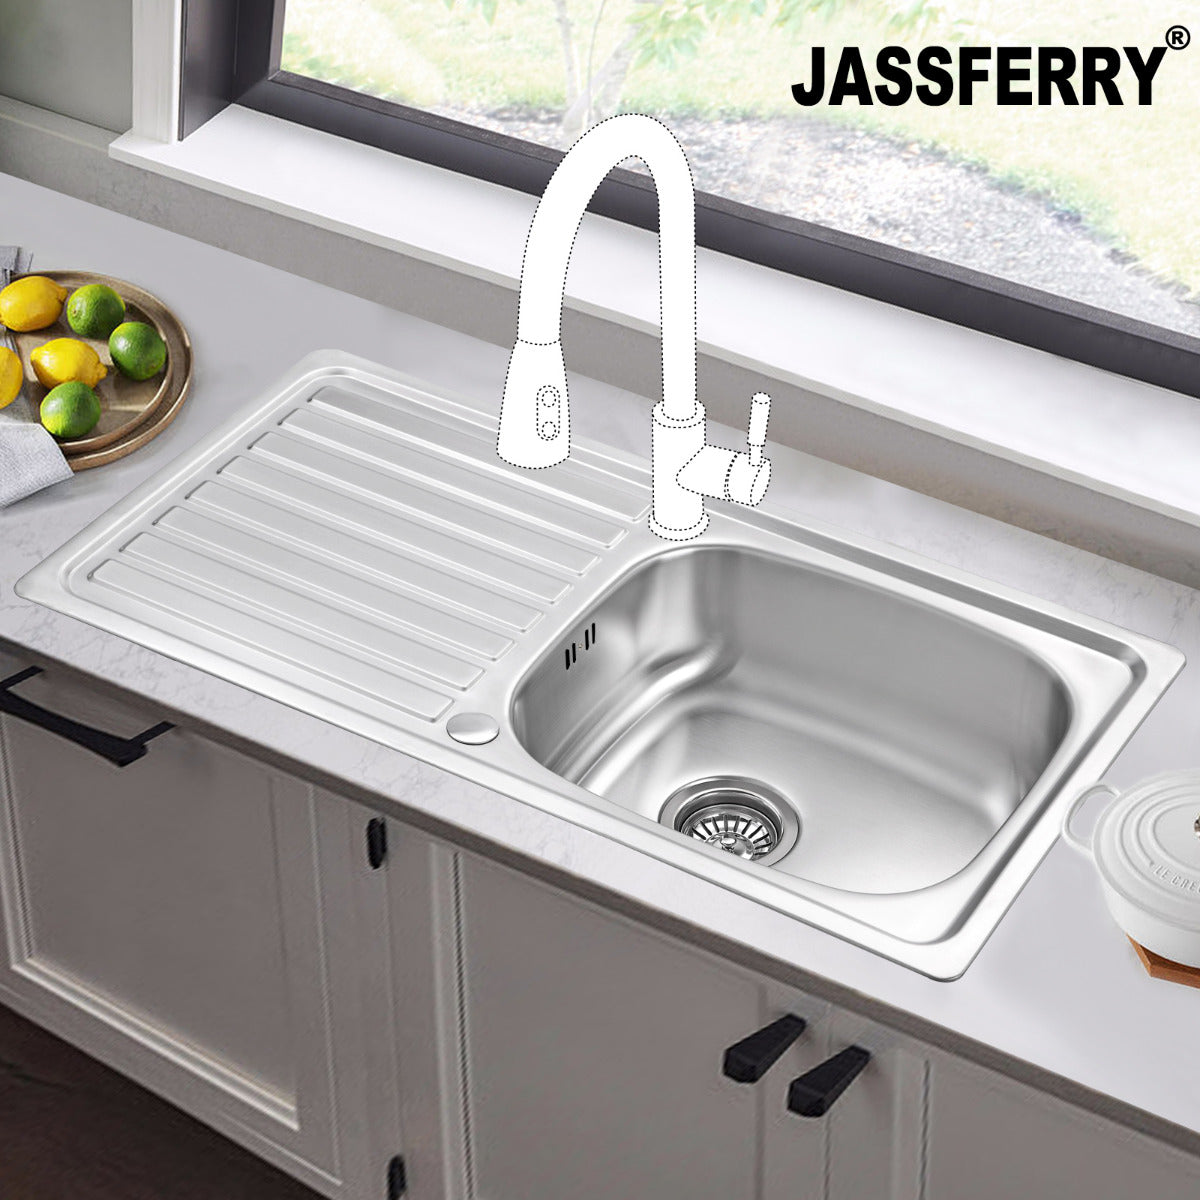 JassferryJASSFERRY 860 x 435 mm Stainless Steel Kitchen Sink Inset Single 1 Bowl Reversible Drainer - 940Kitchen Sinks